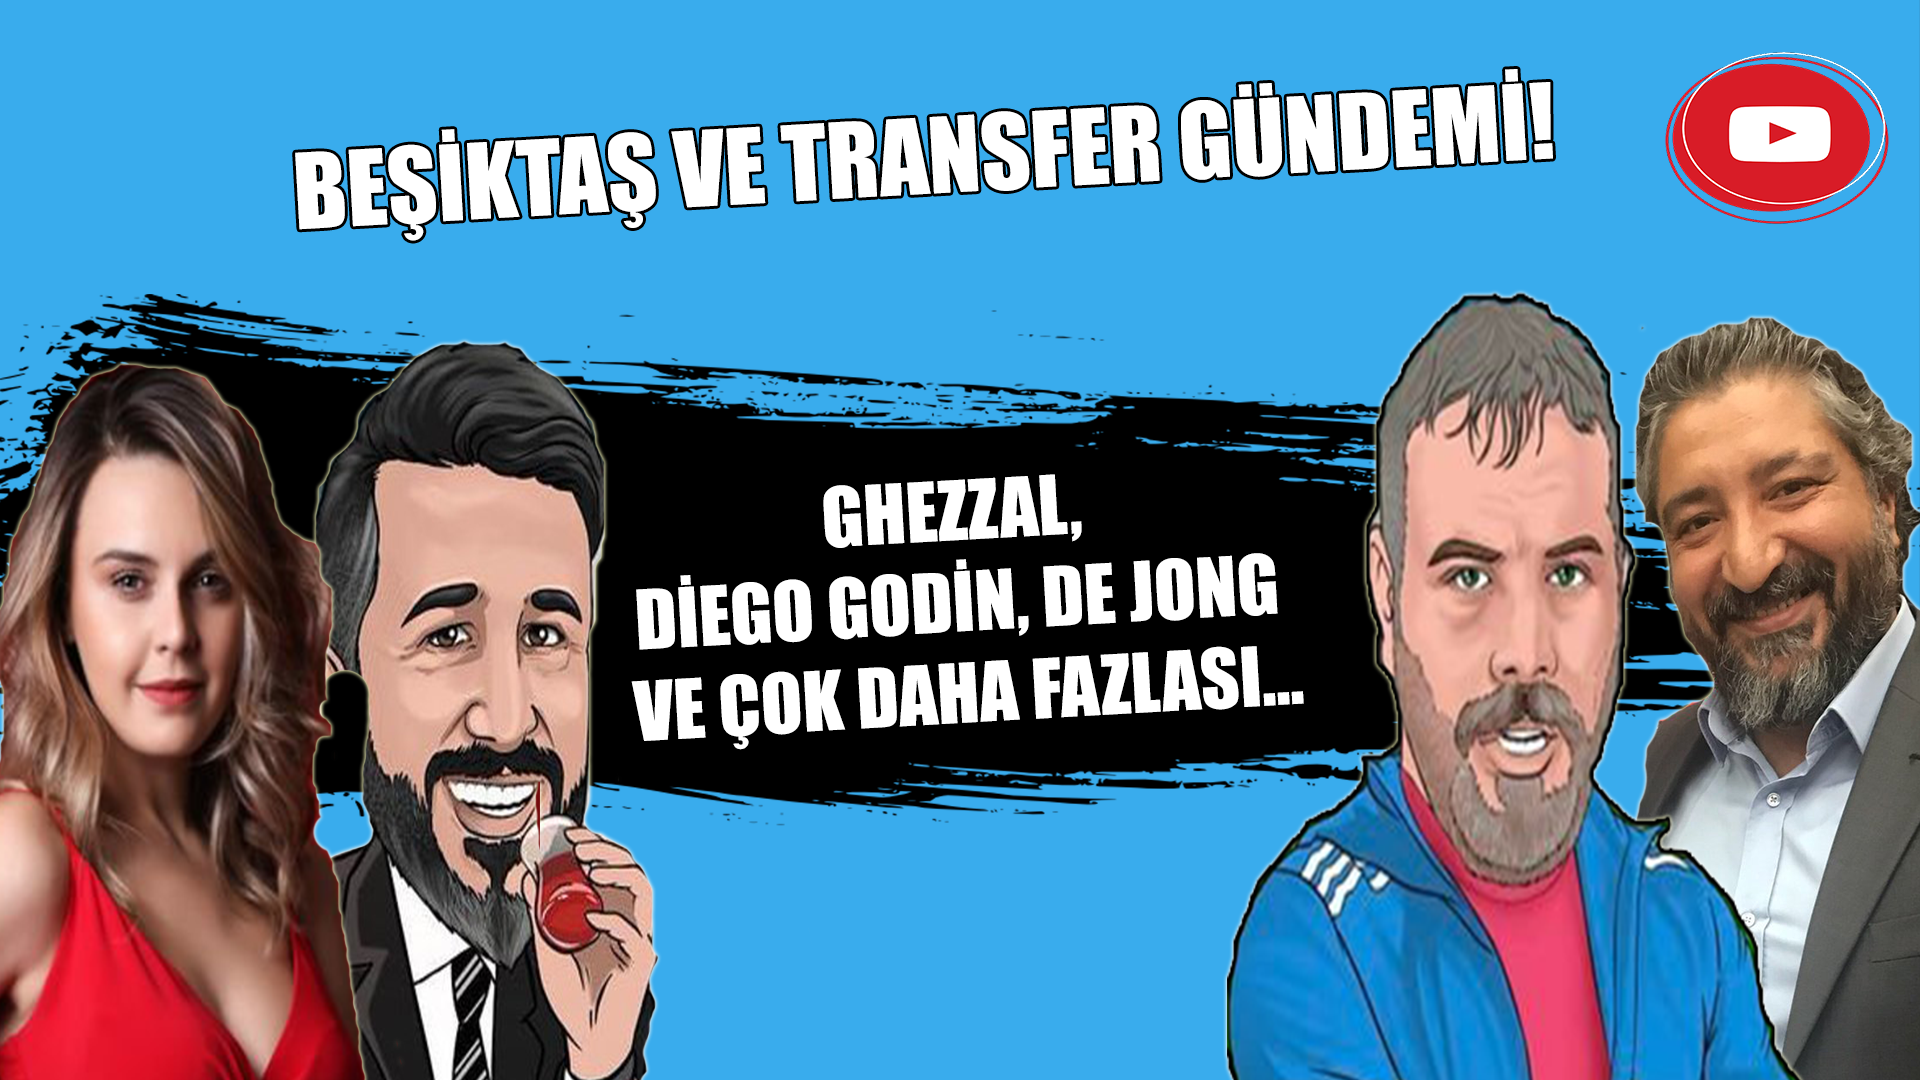 Beşiktaş ve transfer gündemi!